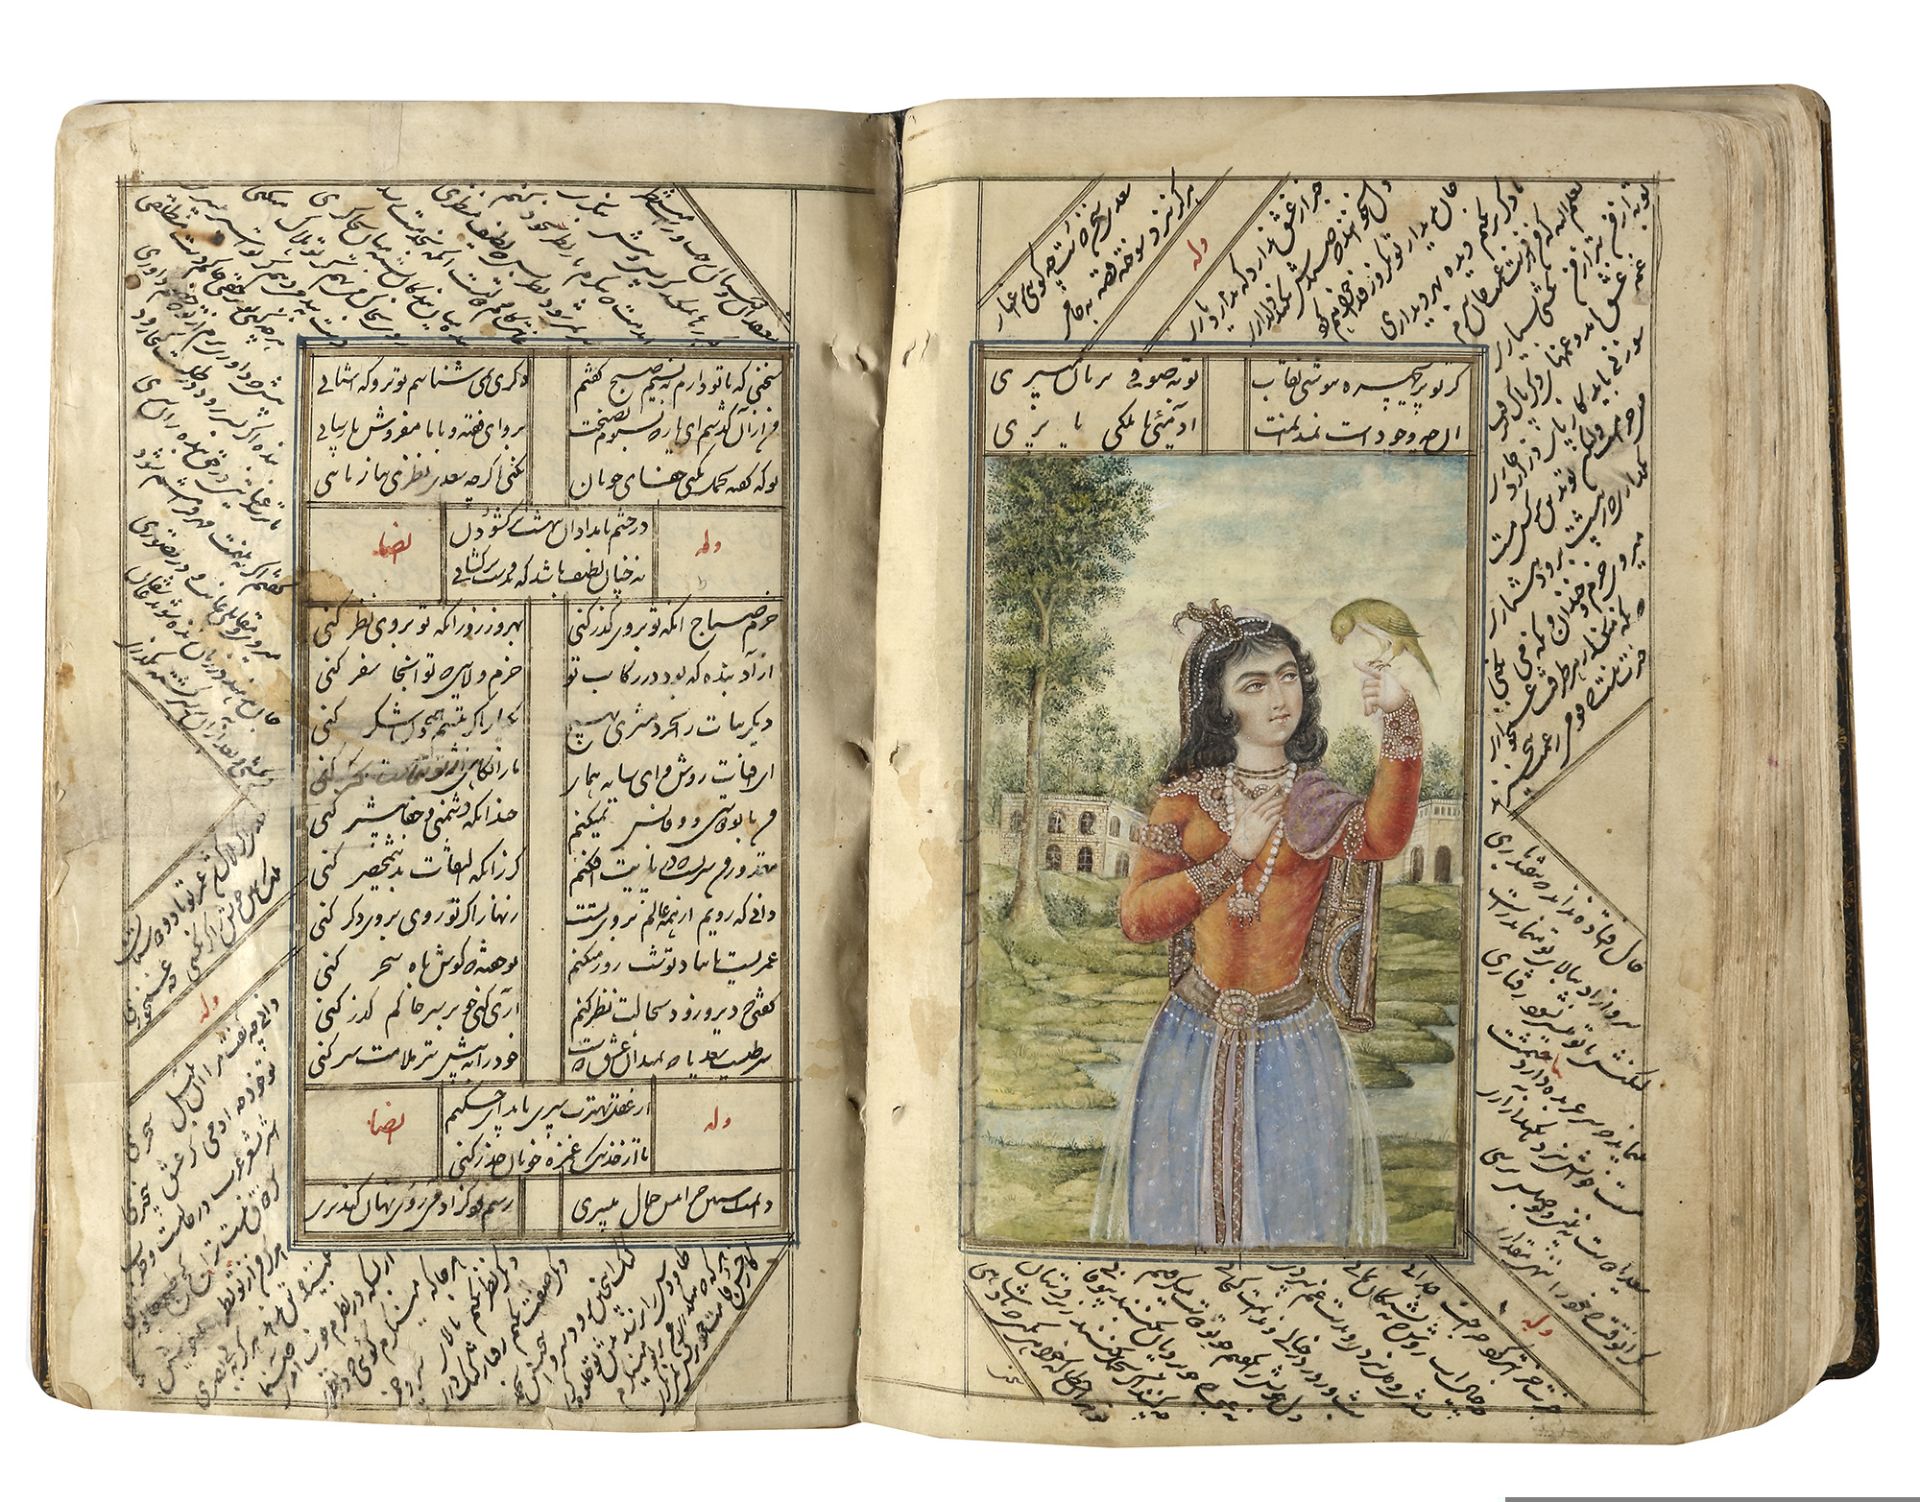 A COMPLETE WORK OF SAADI, KOLIYAT SAADI, PERSIA-QAJAR, 1235 AH/1819 AD - Image 10 of 11